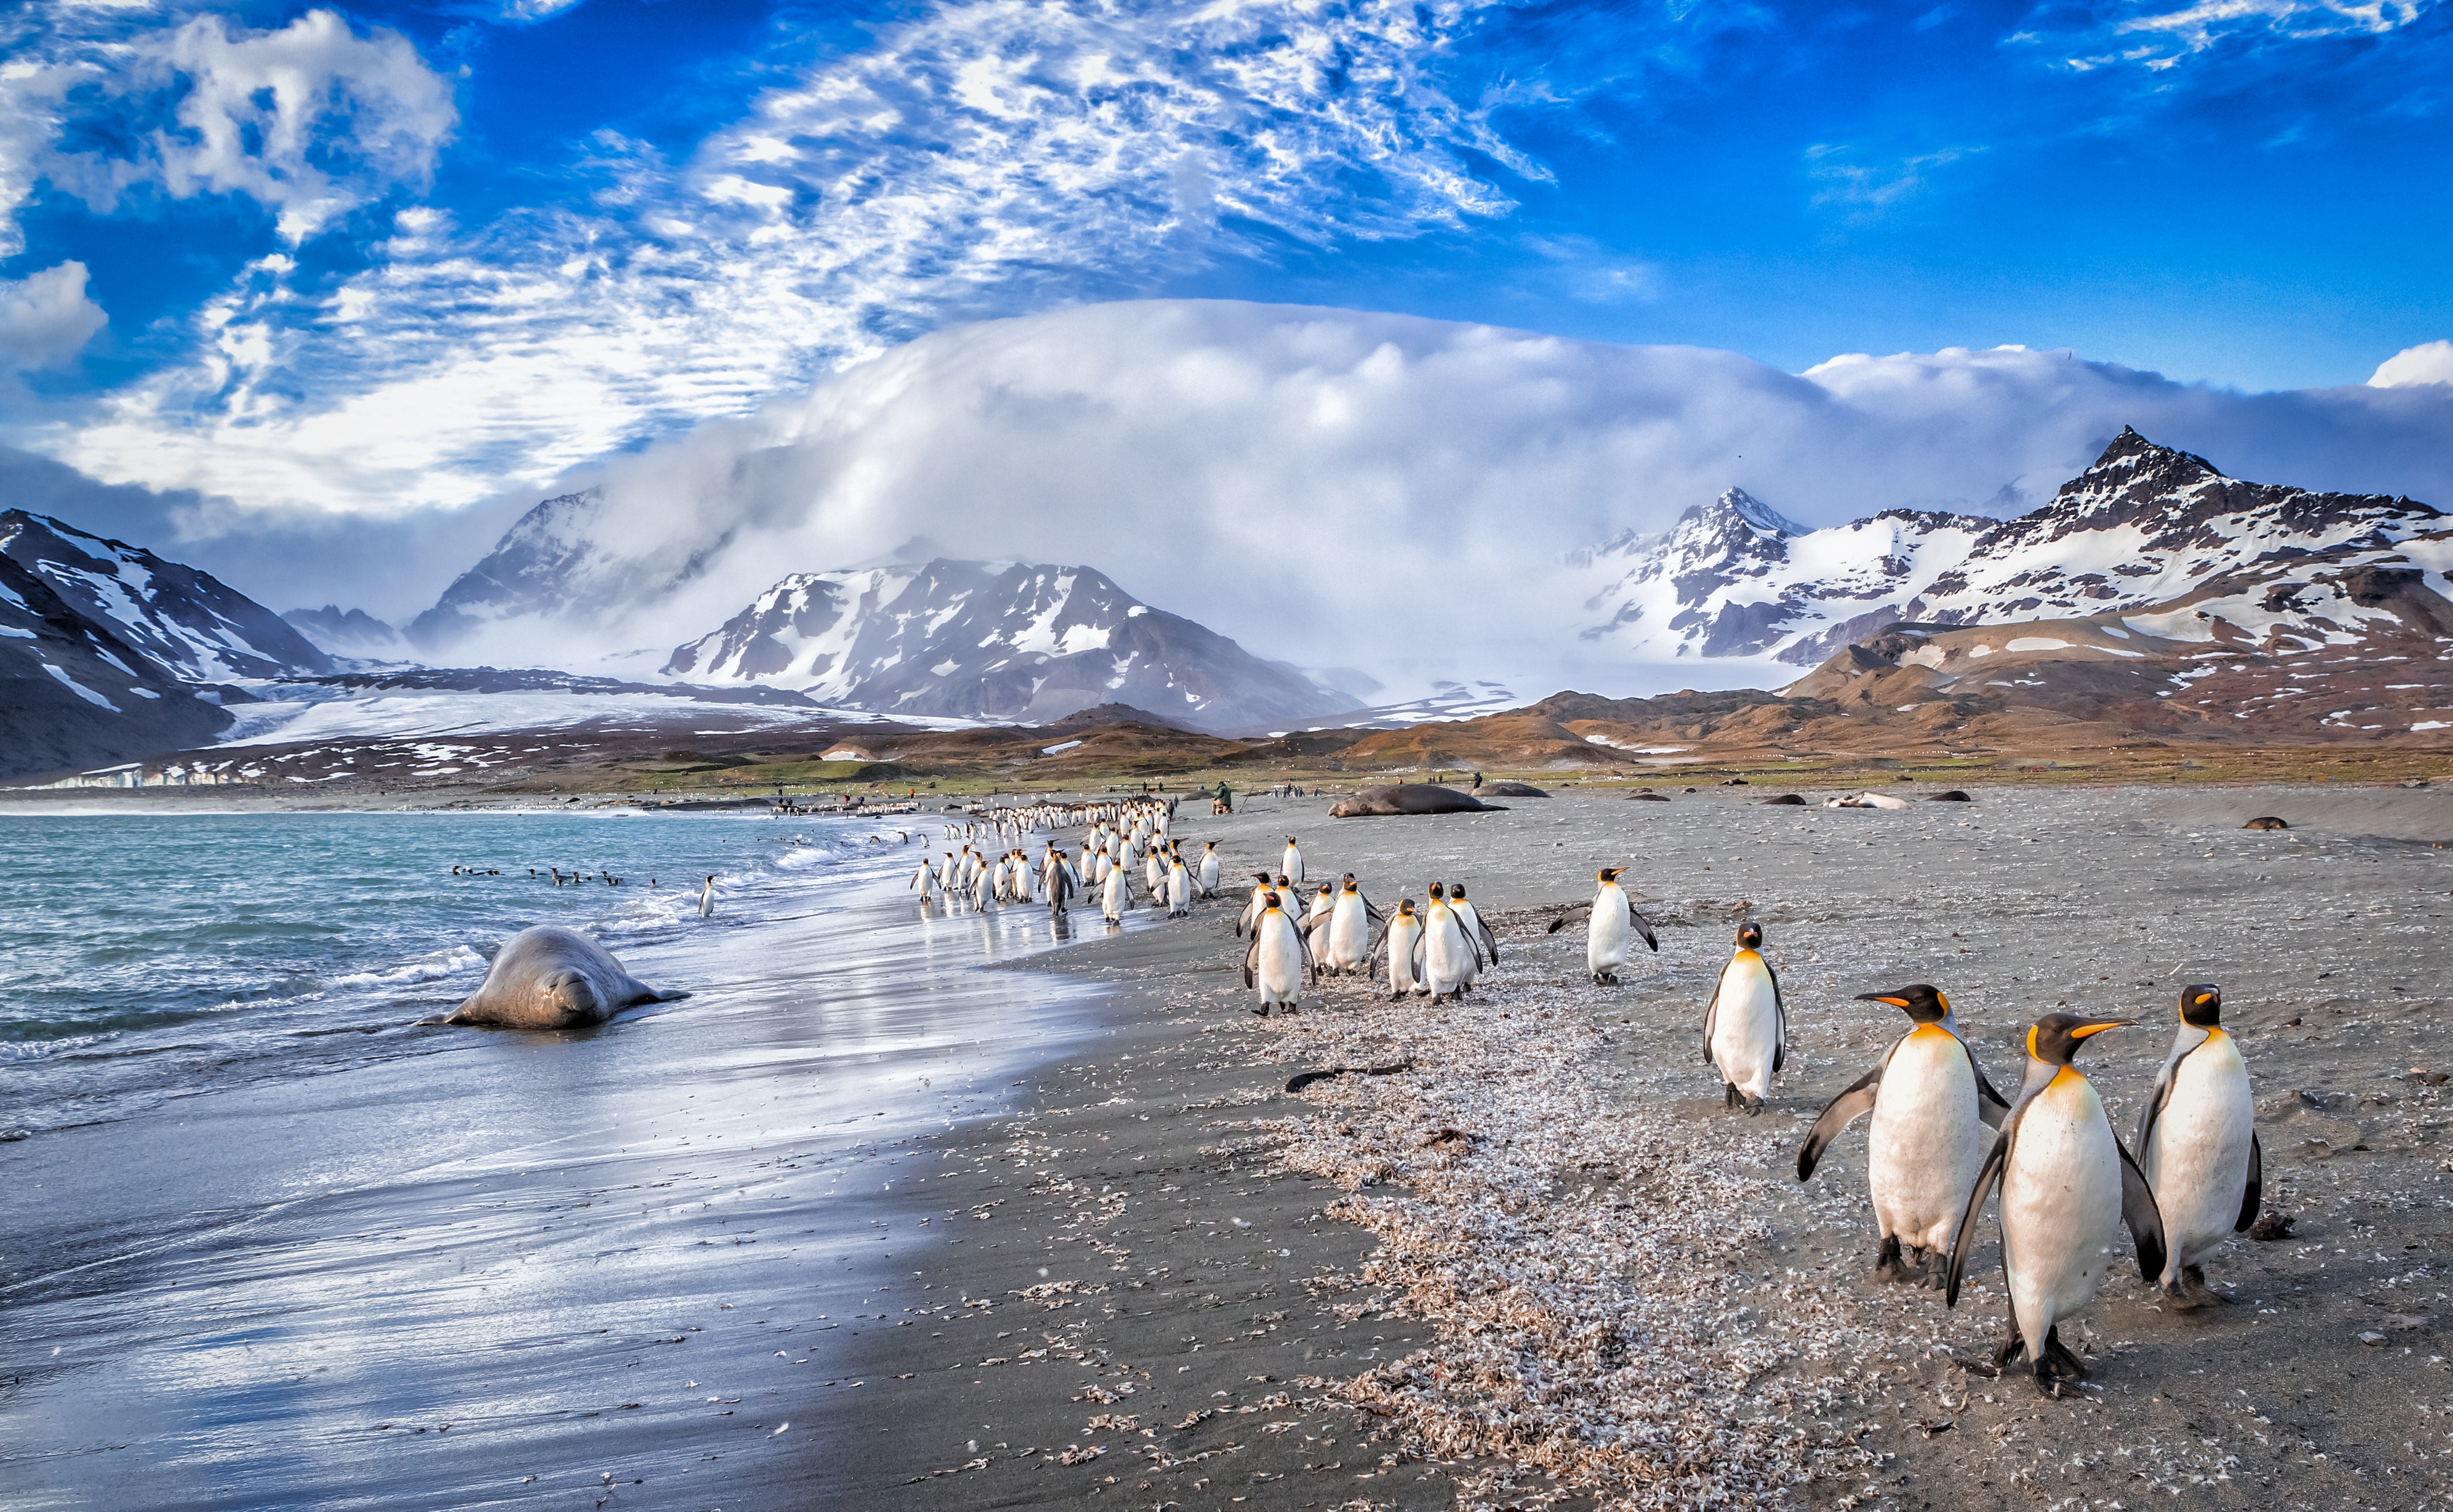 Life Returns - Springtime Expedition to Antarctica